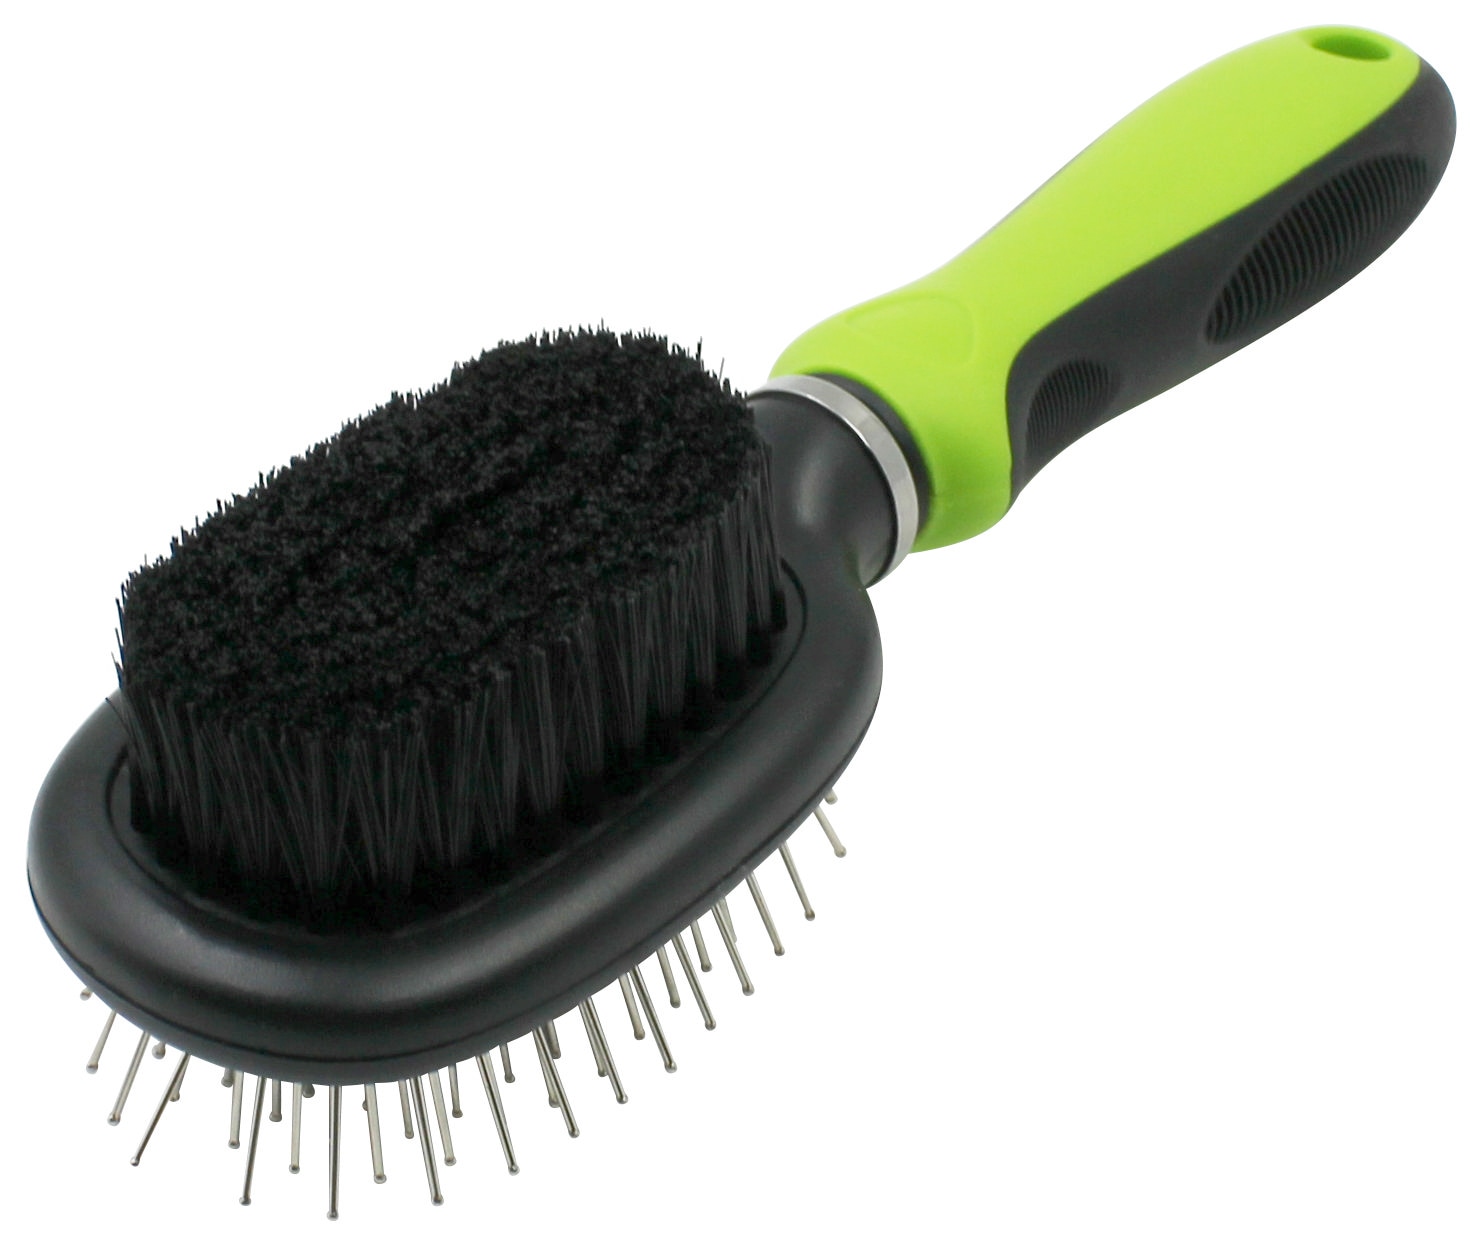 Rectangular Carpet Cleaning Brush, Bristle Material : Plastic